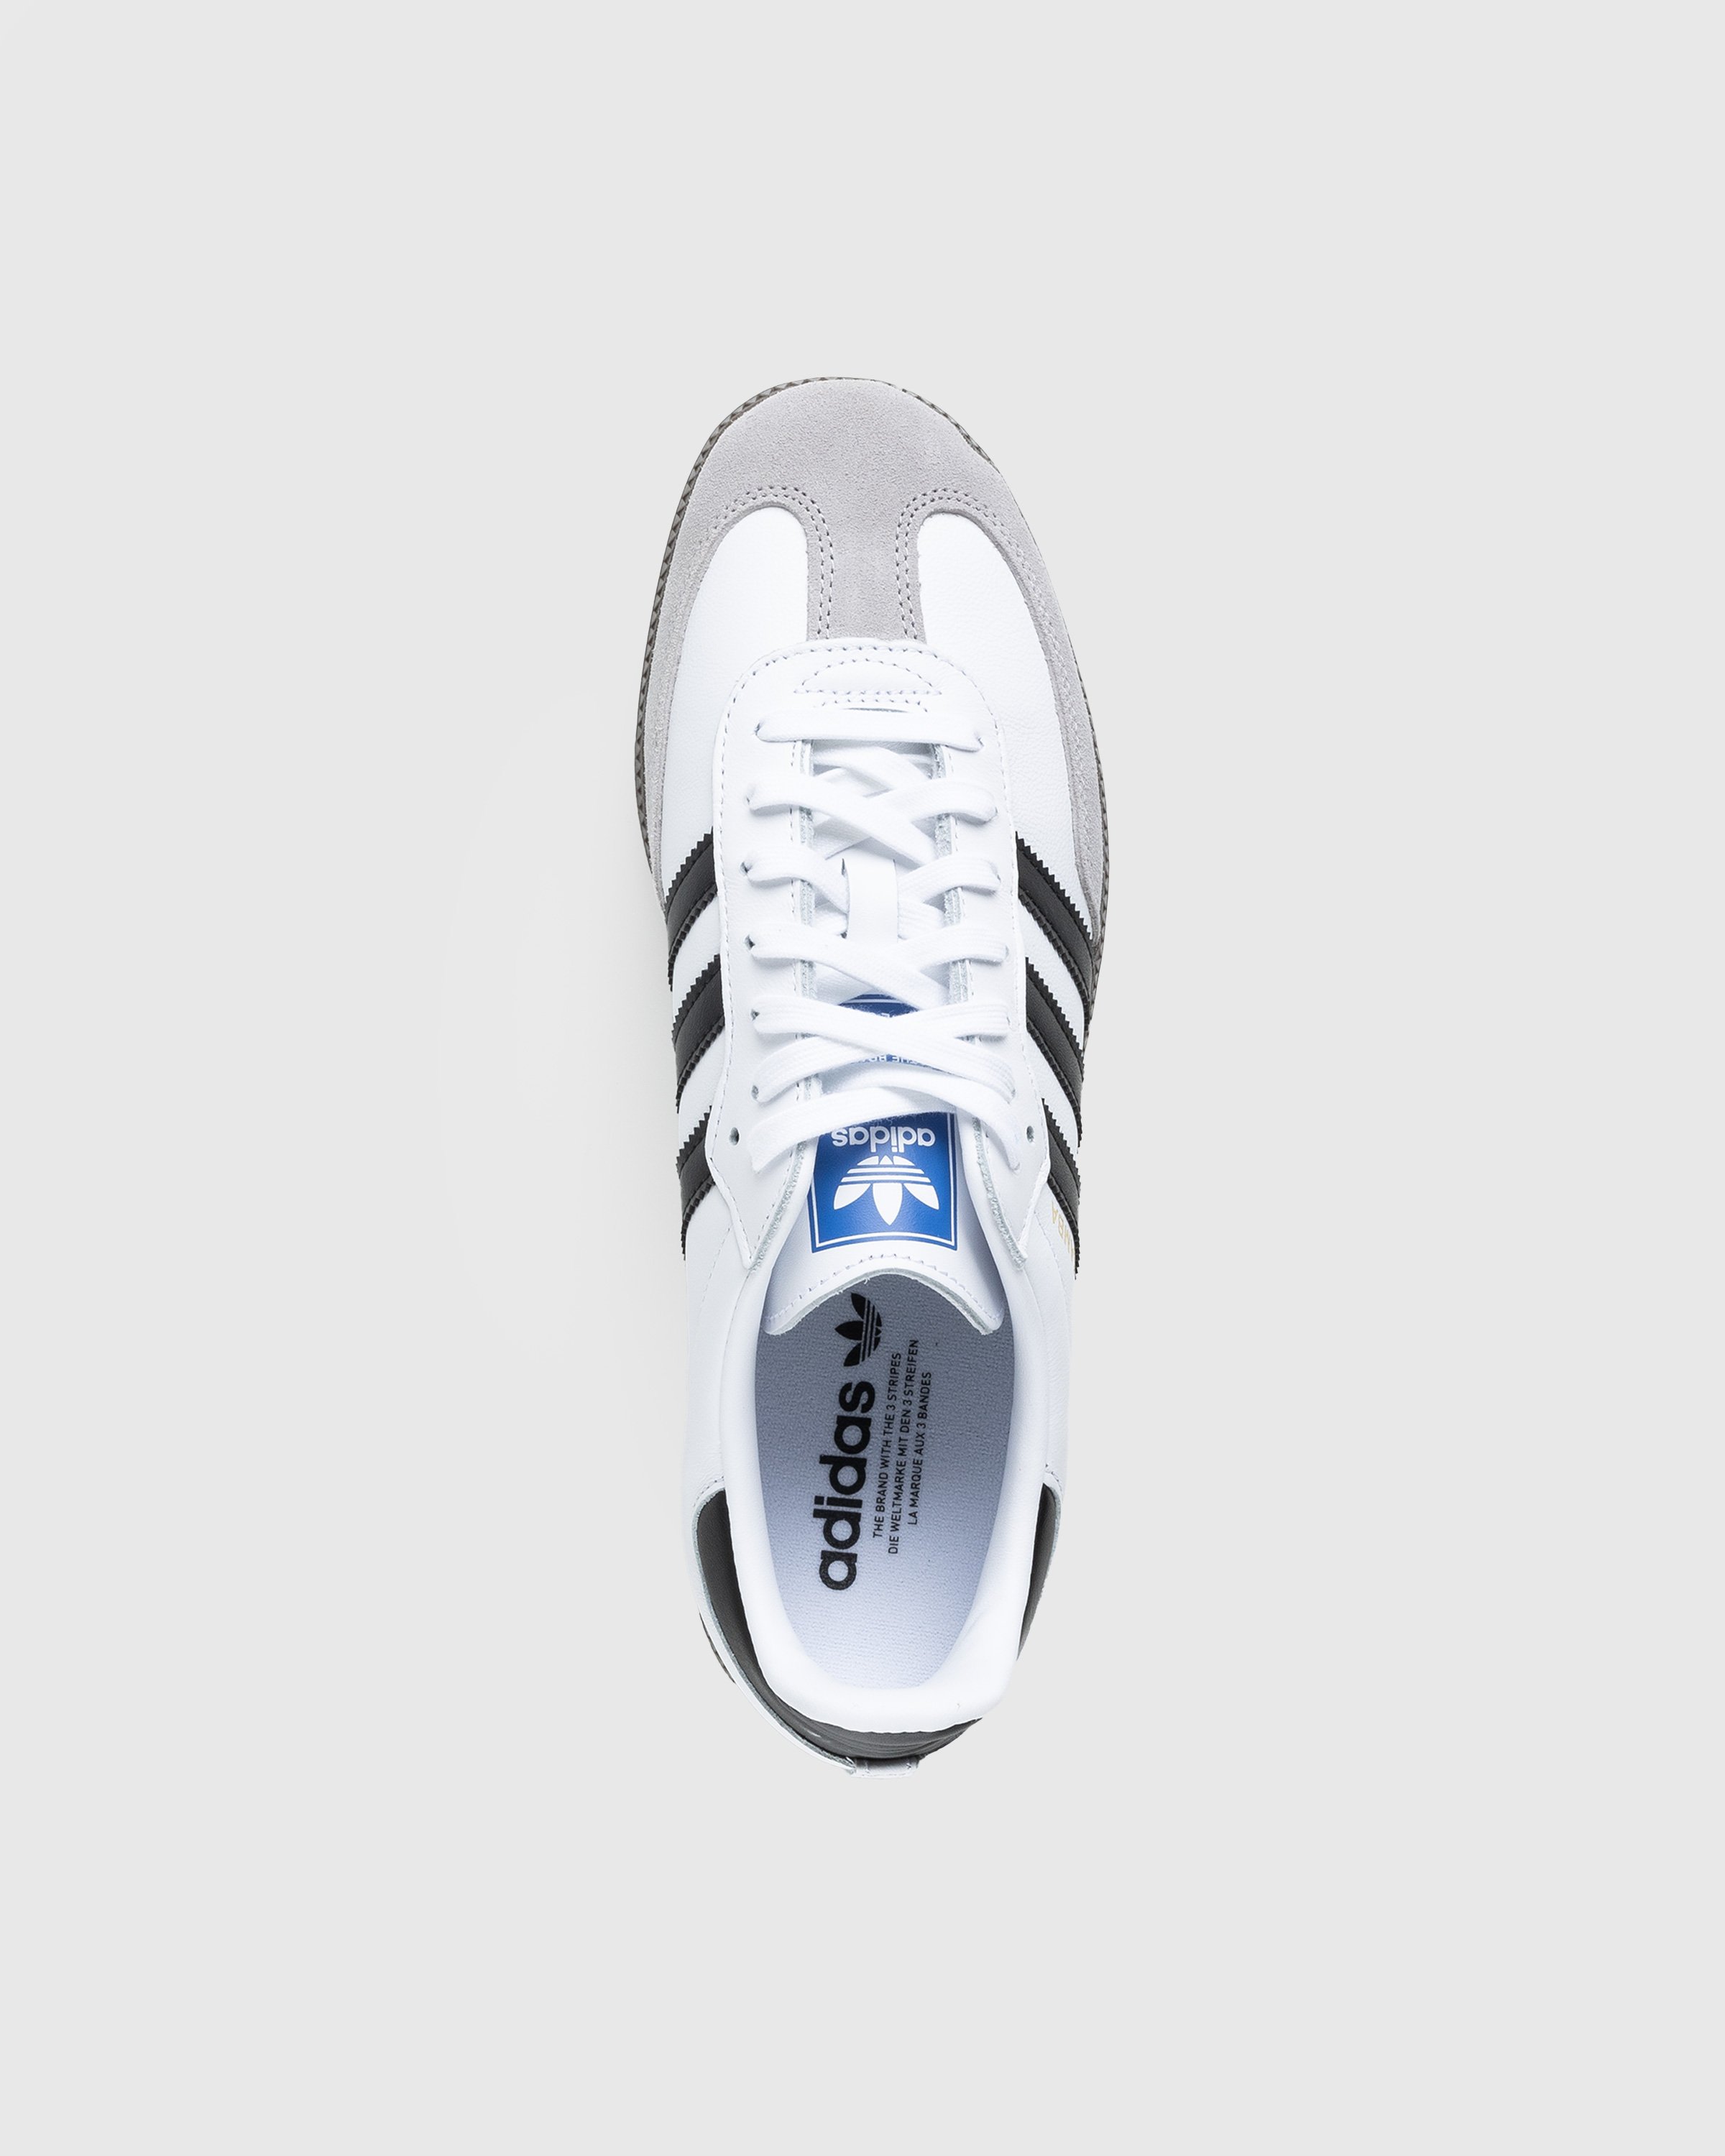 Adidas - Samba OG White - Footwear - White - Image 5